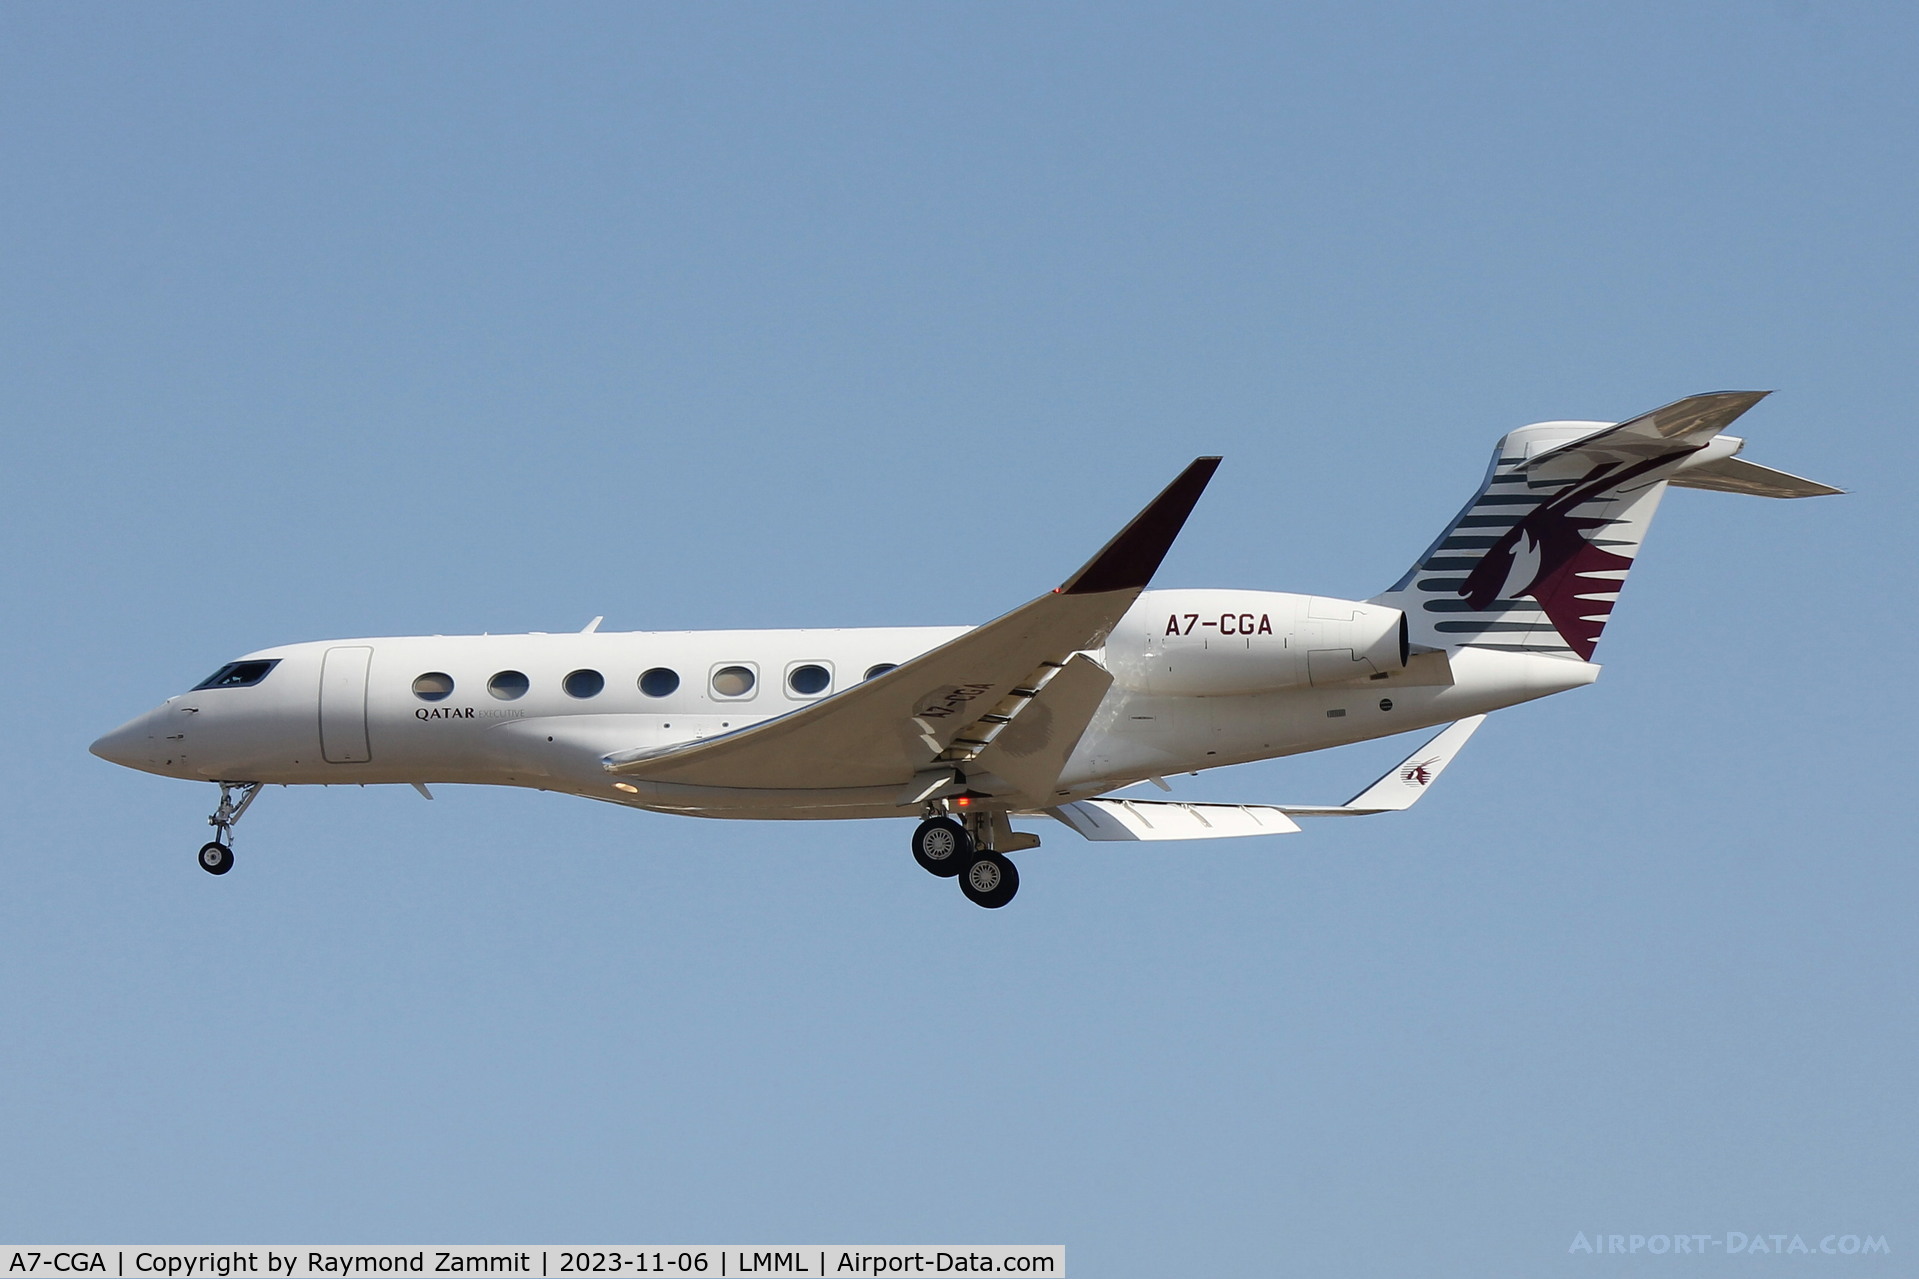 A7-CGA, 2015 Gulfstream G-VI (G650ER) C/N 6153, Gulfstream G-VI A7-CGA Qatar Executive